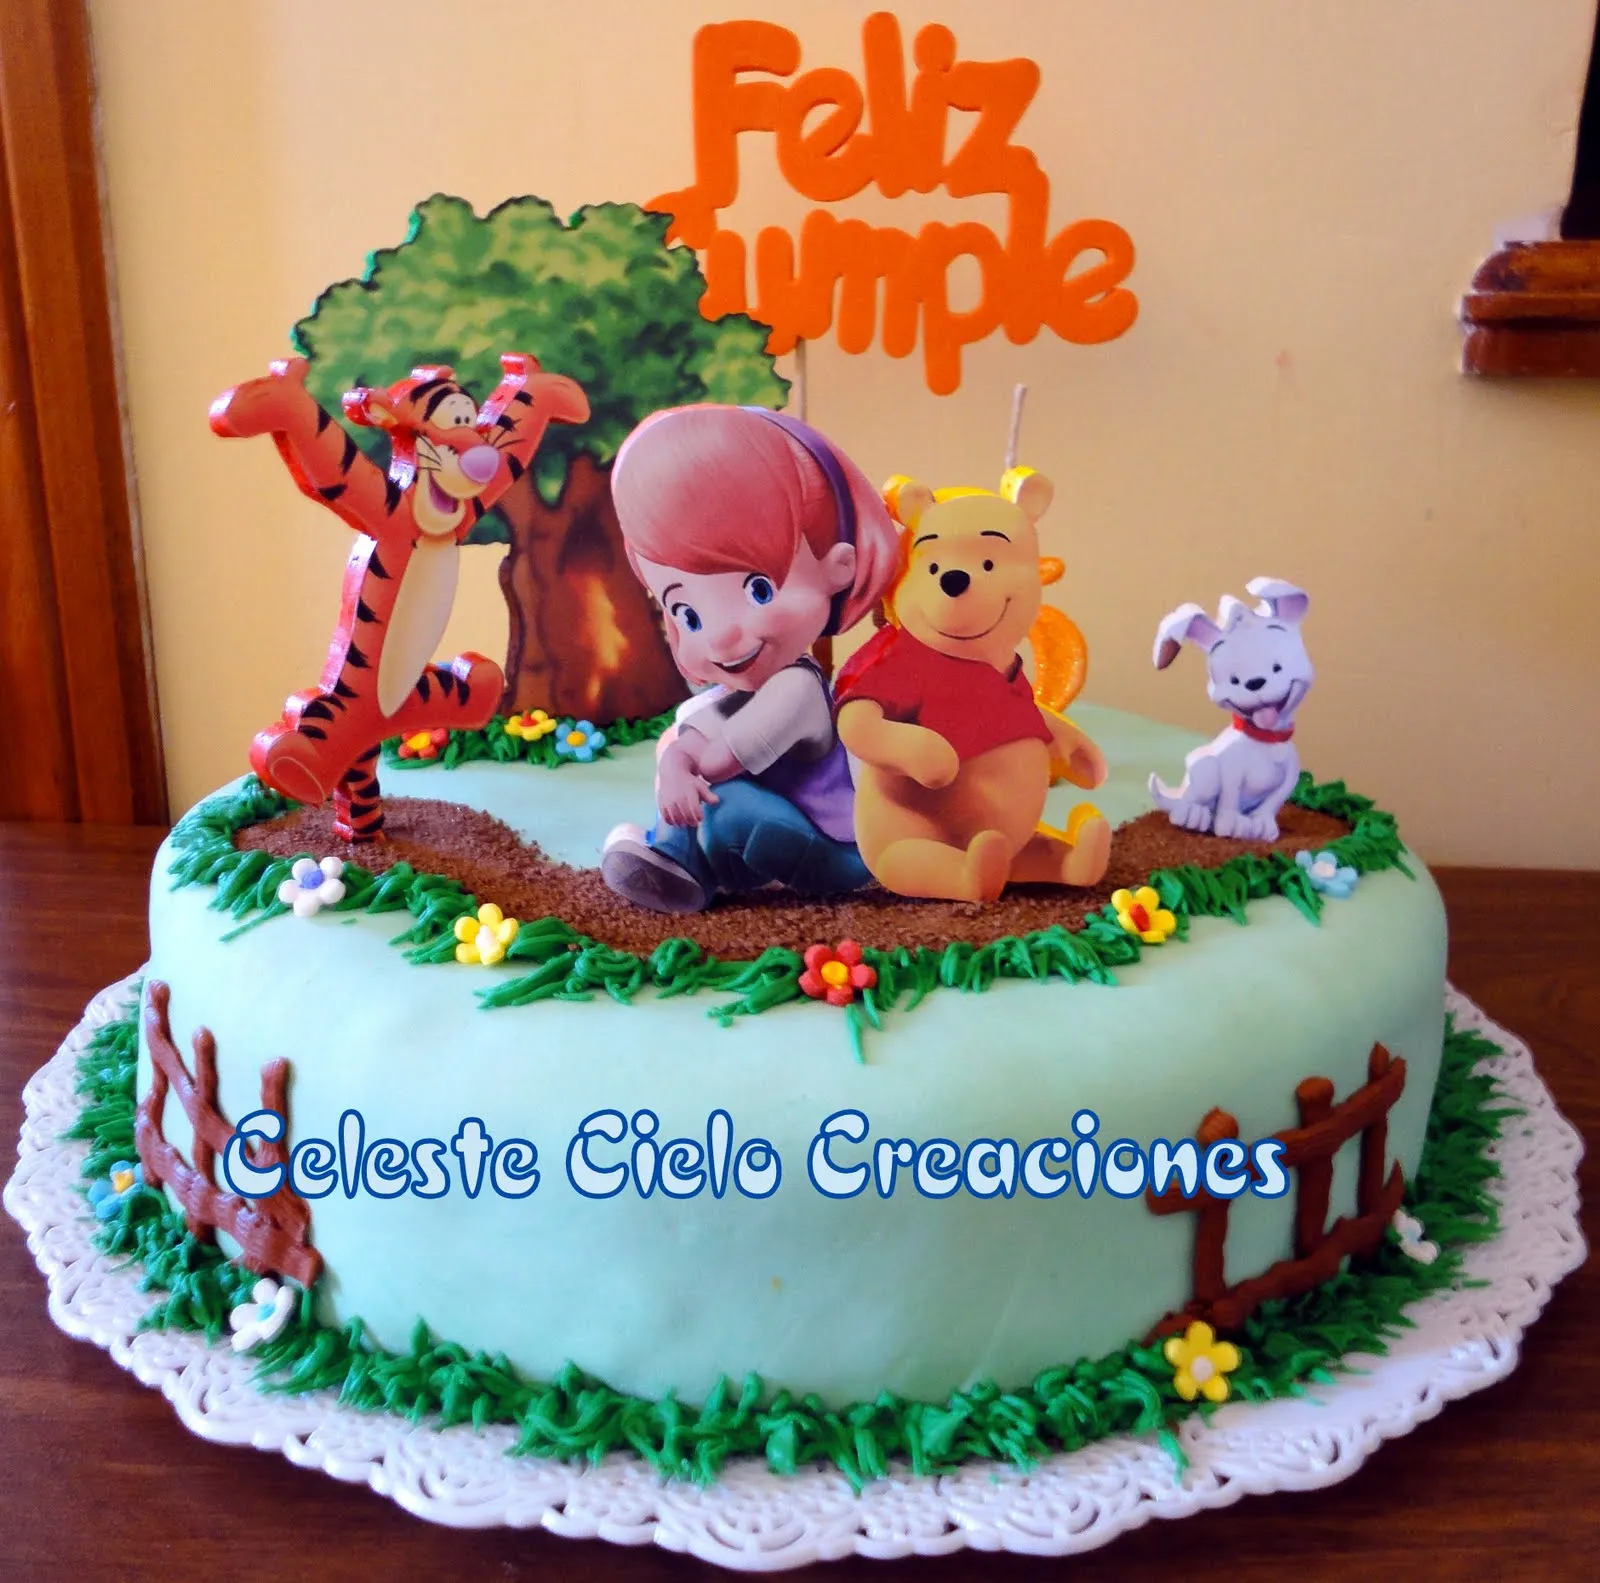 Celeste Cielo Creaciones: Tortas Decoradas: Mis Amigos Tigger y Pooh